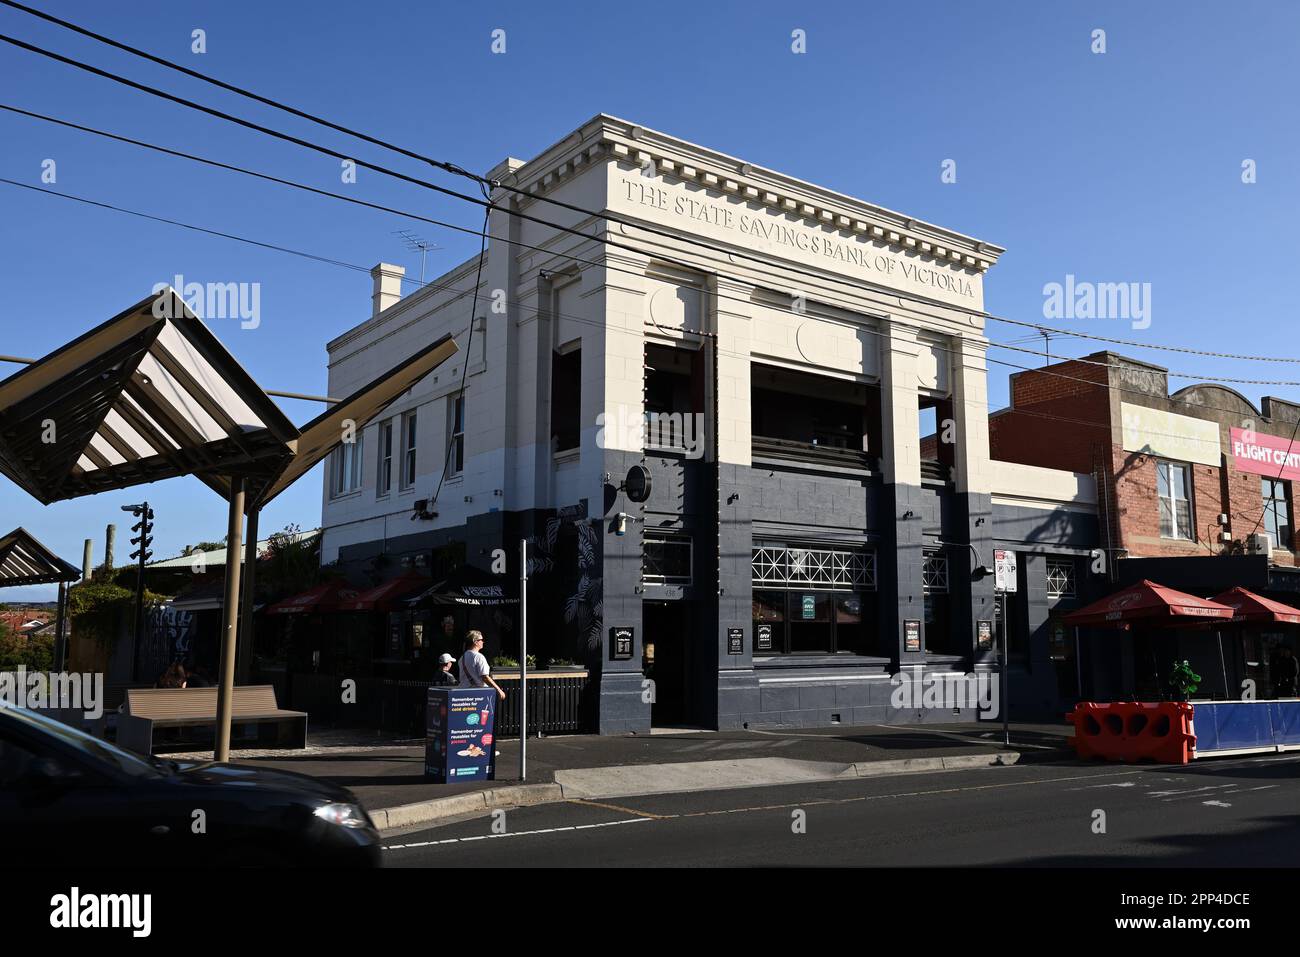 Sonder Bar, in Centre Rd, situato in un edificio storico, precedentemente la state Savings Bank di Victoria Foto Stock